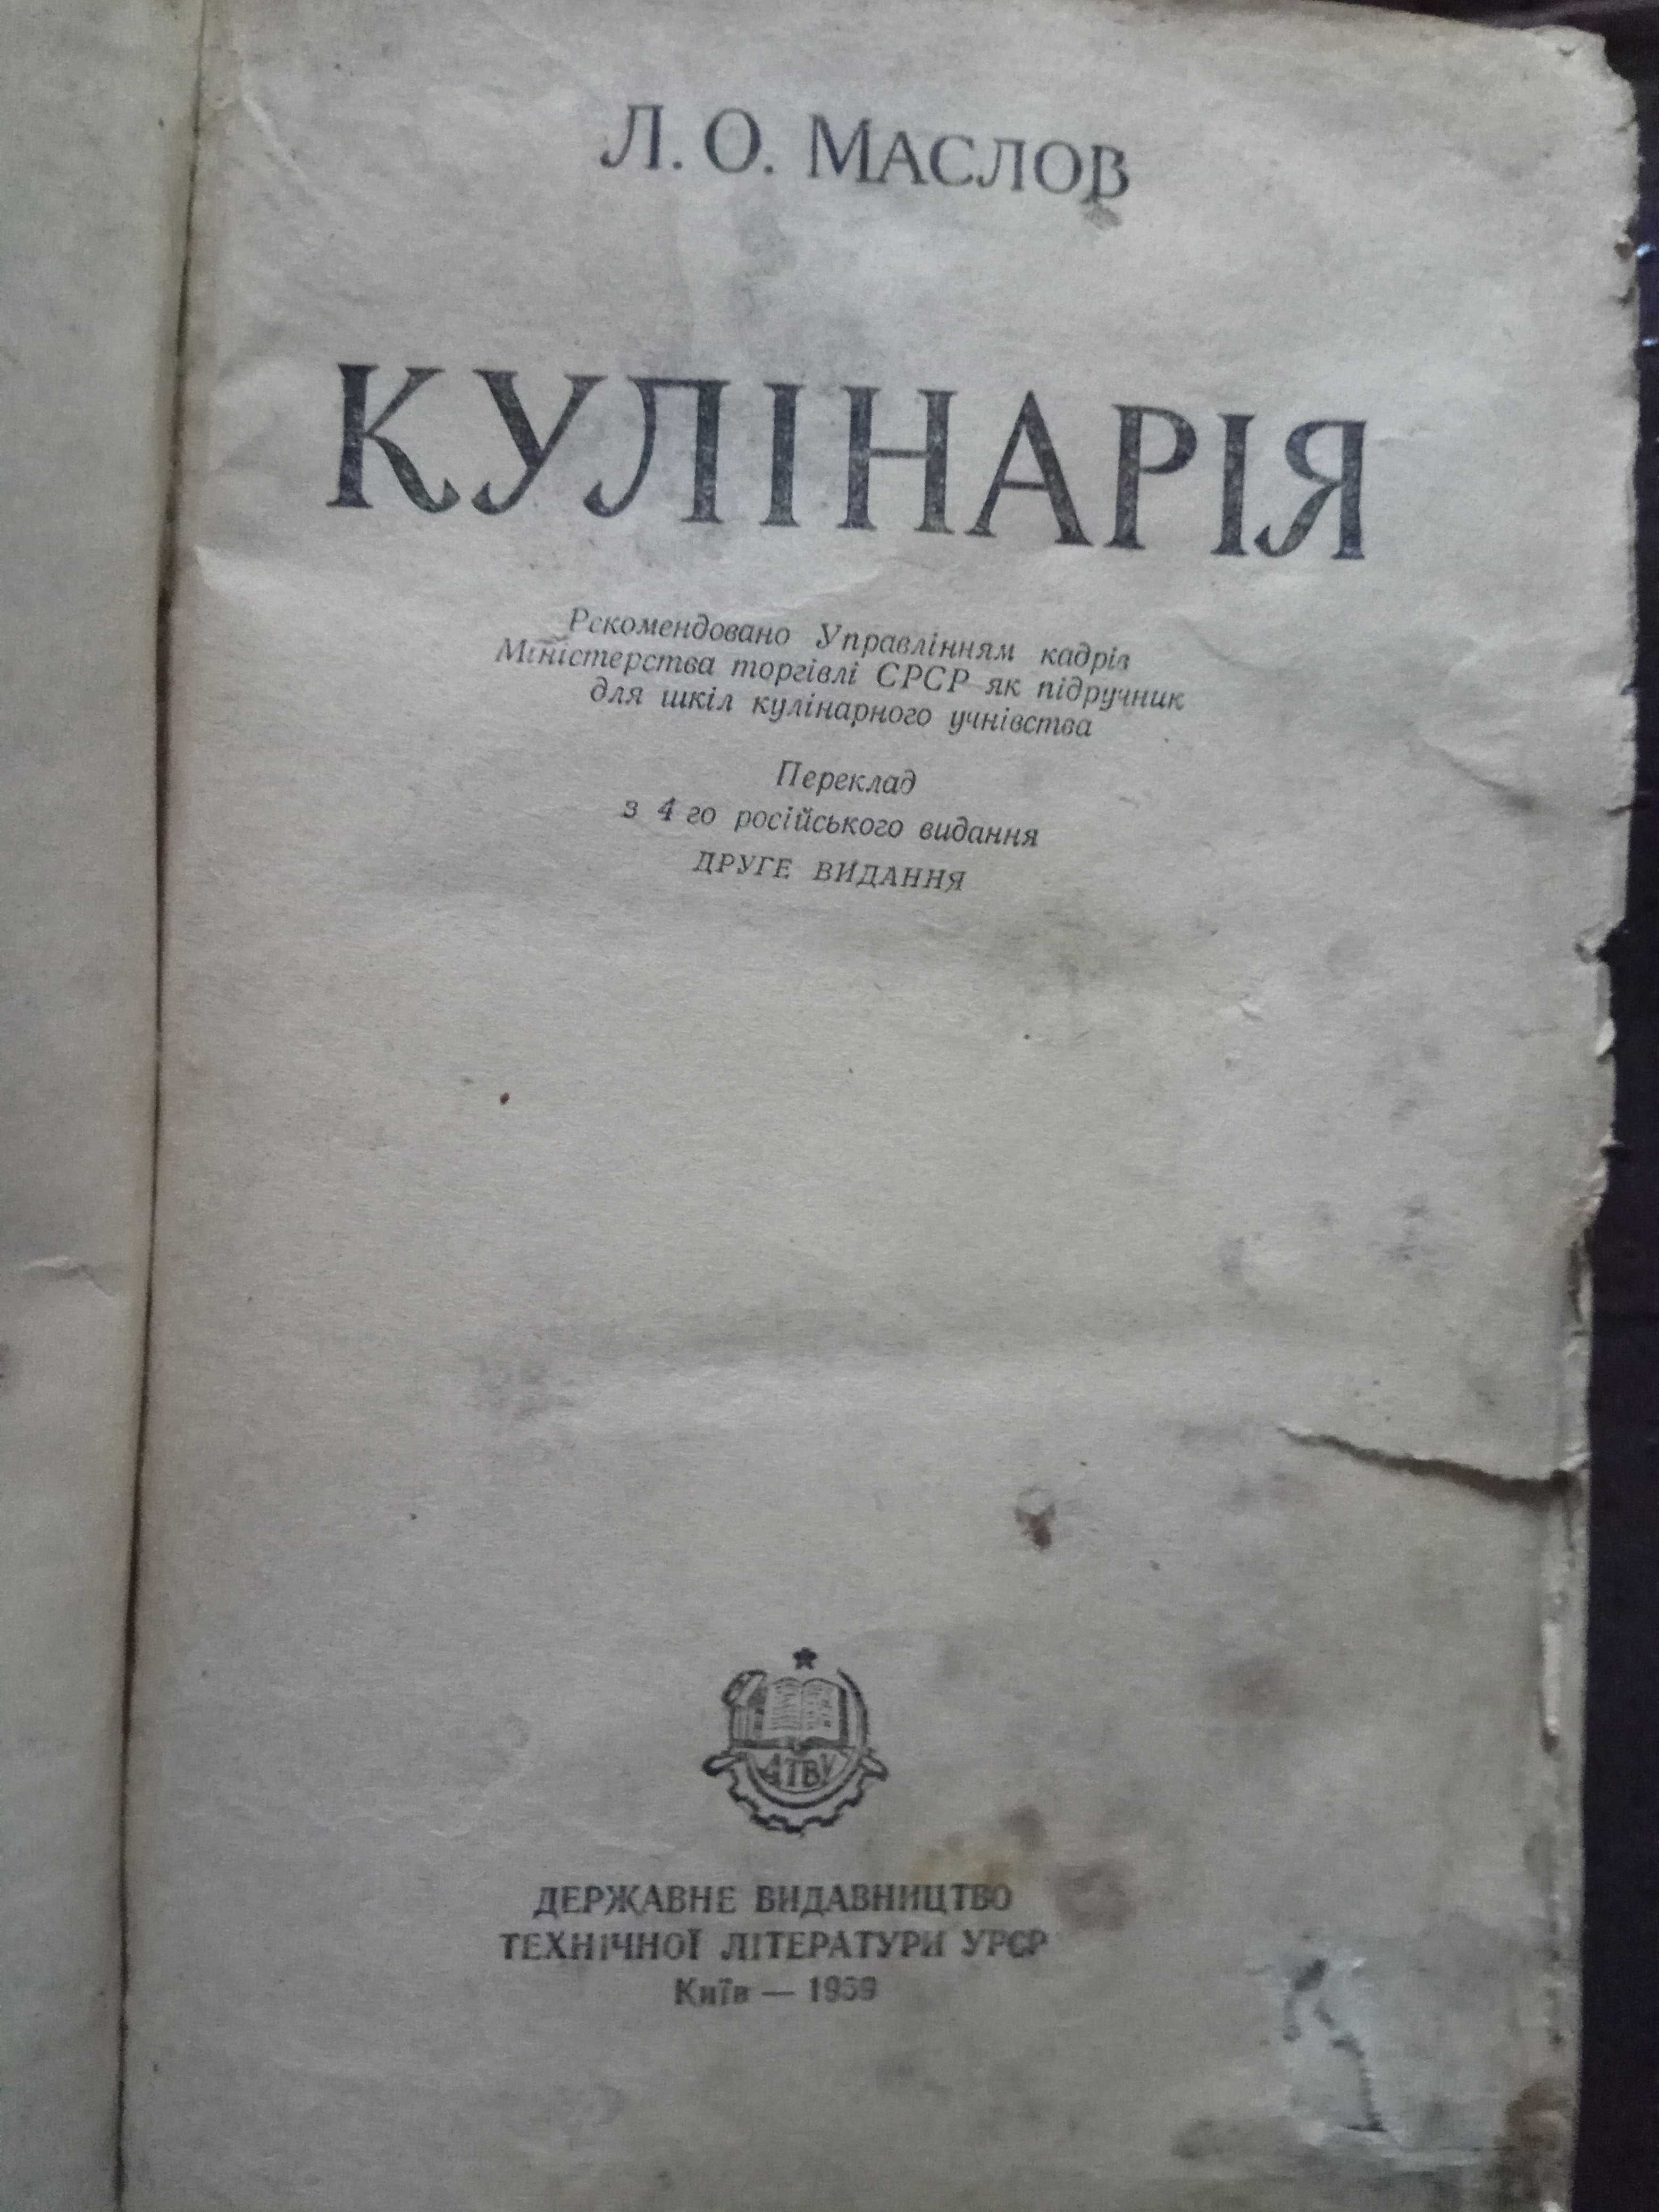 Кулинария 1959г. Англо-русский словарь 1986г.